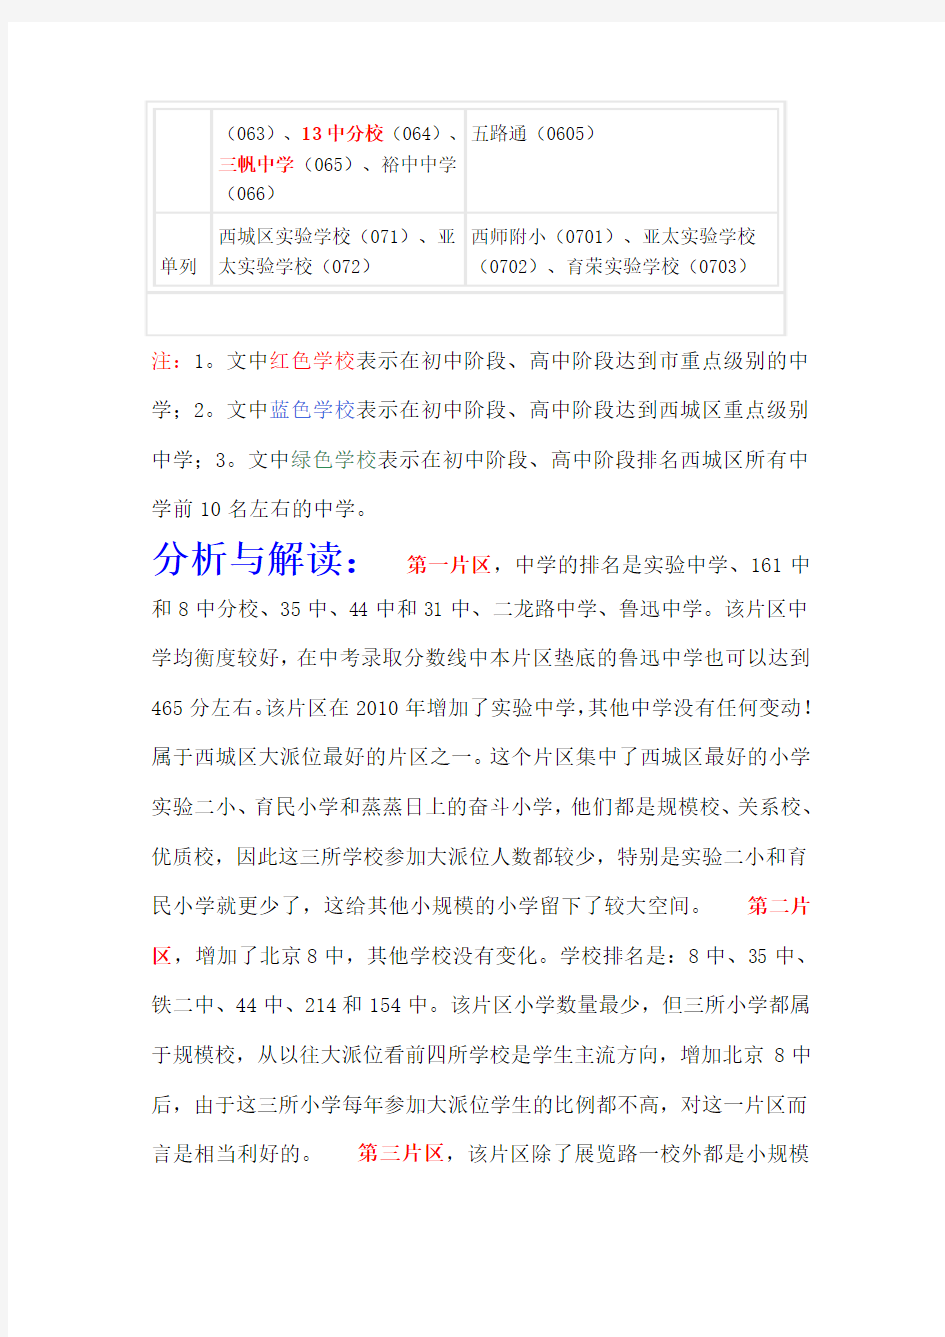 北京市西城区2010年小升初大派位划片表详尽分析及解读